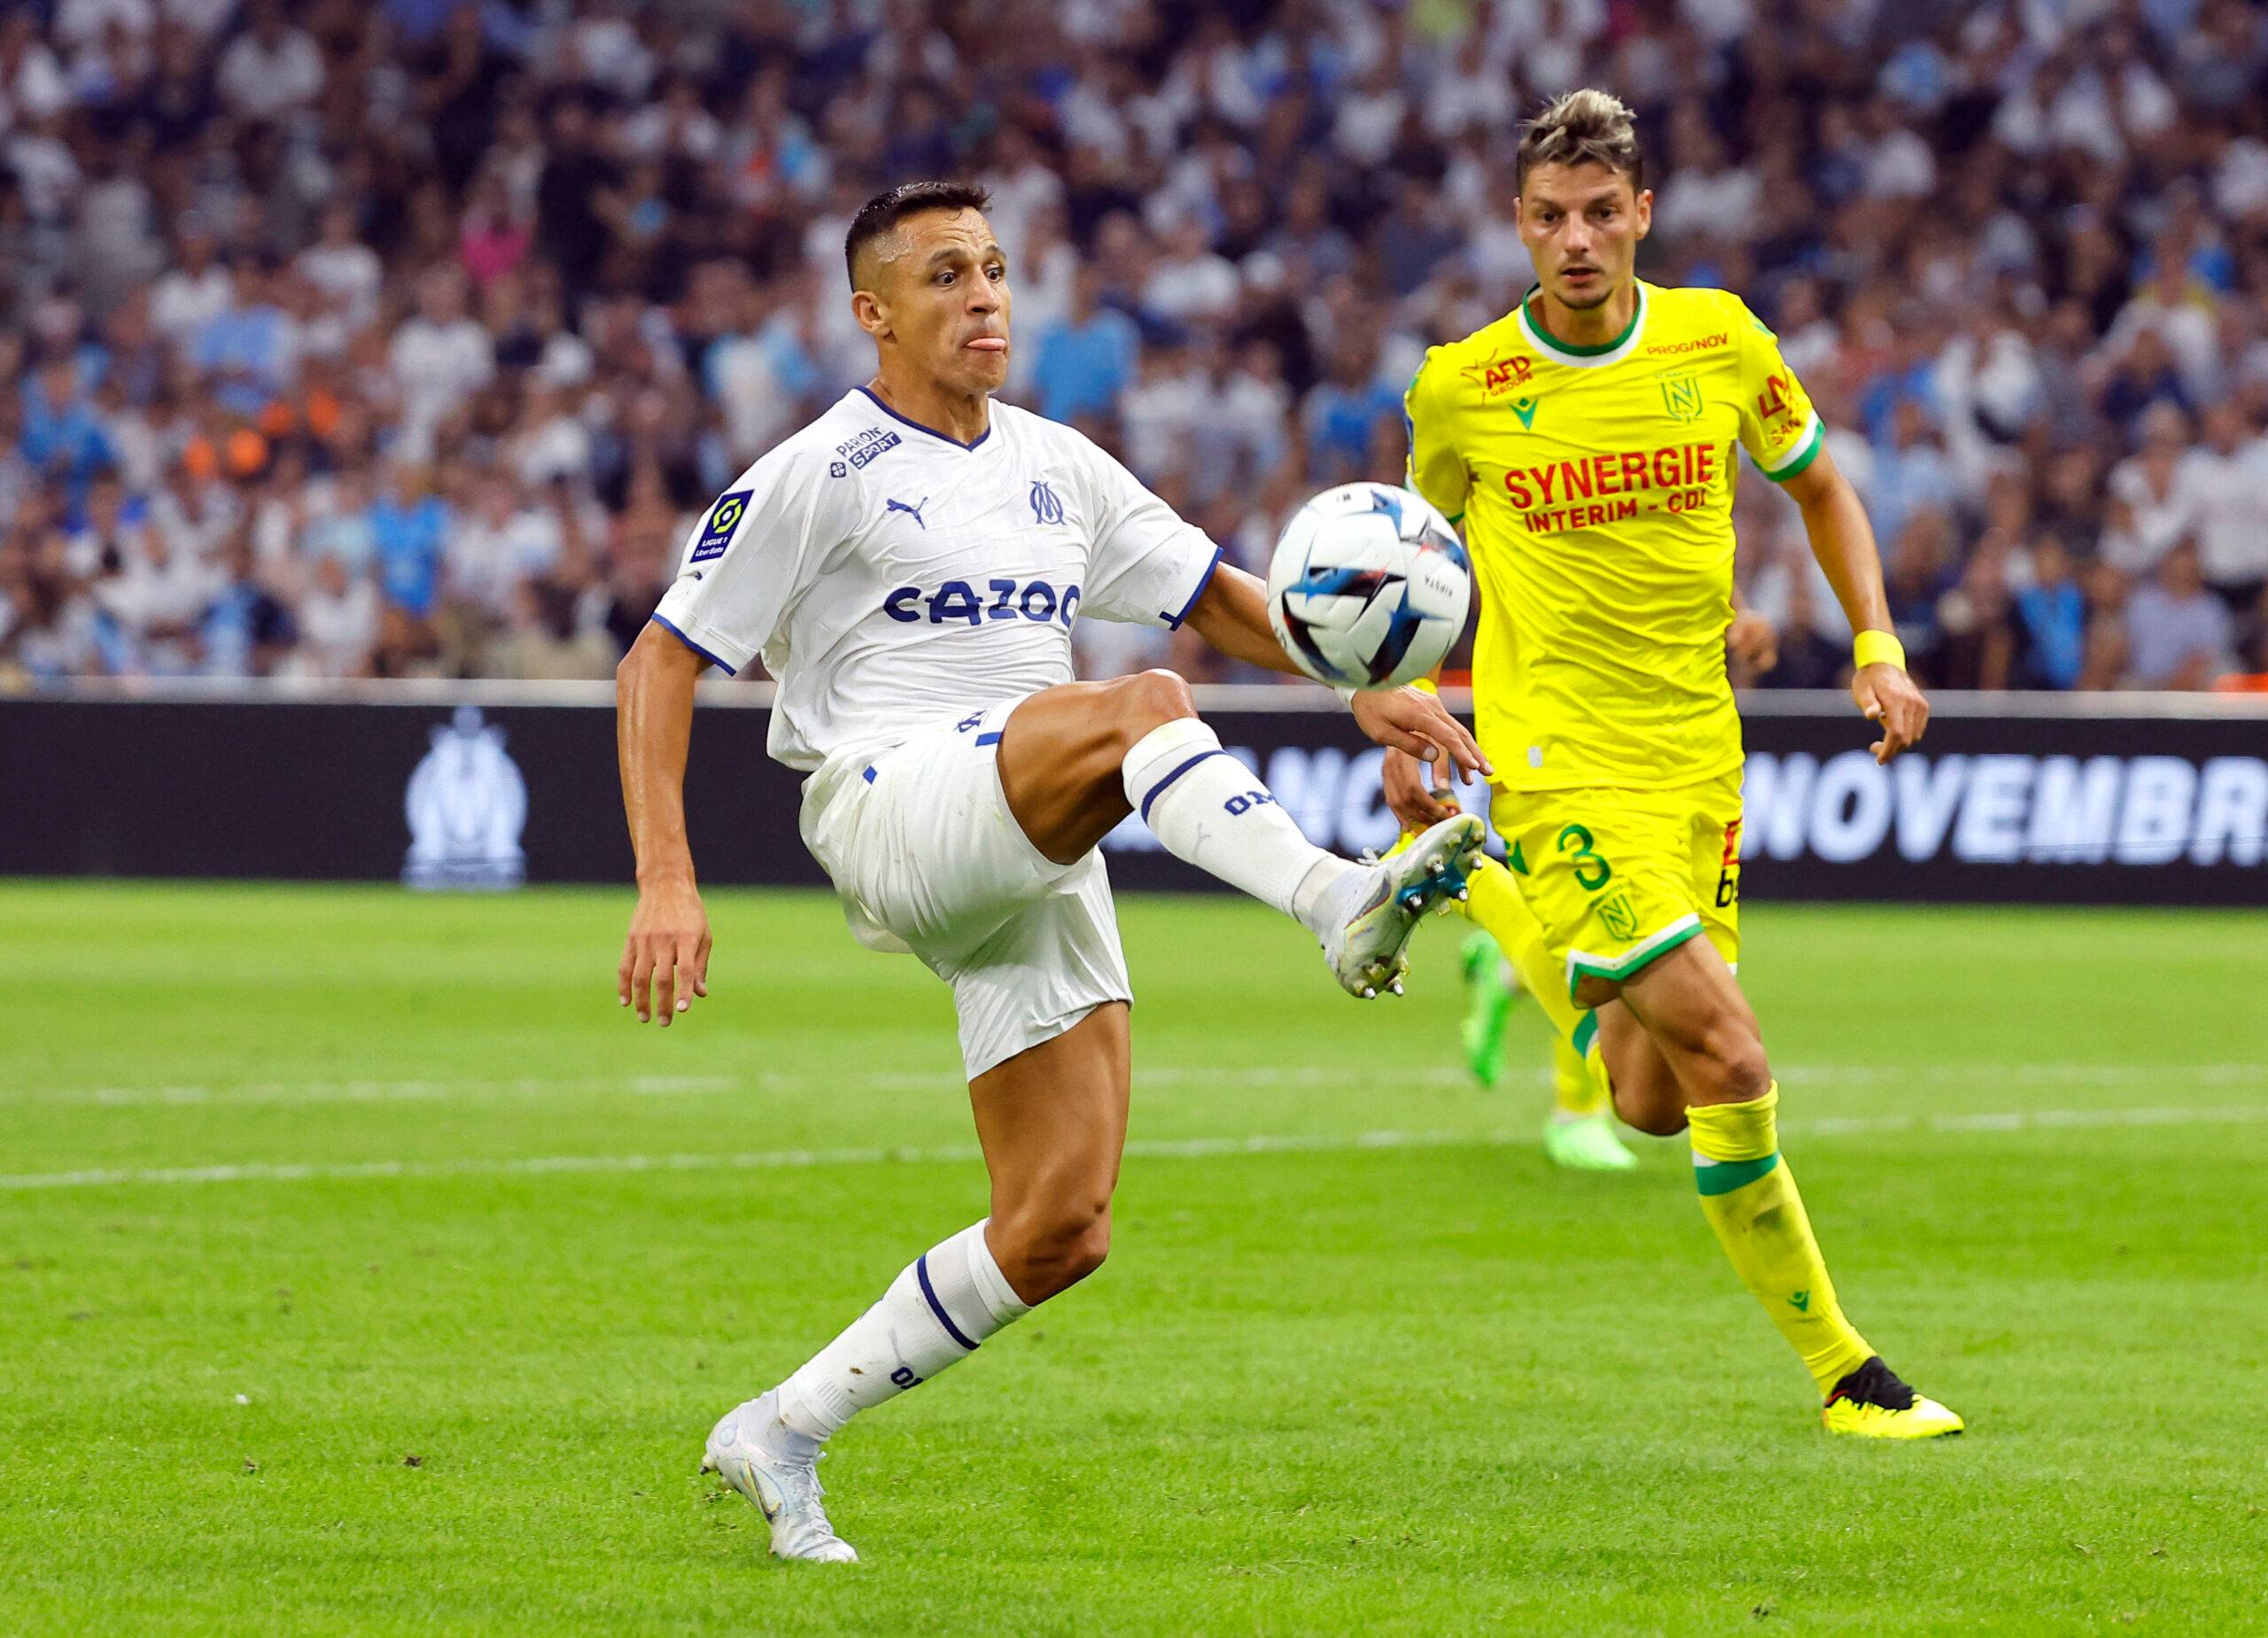 Marseille's Sanchez controls the ball.